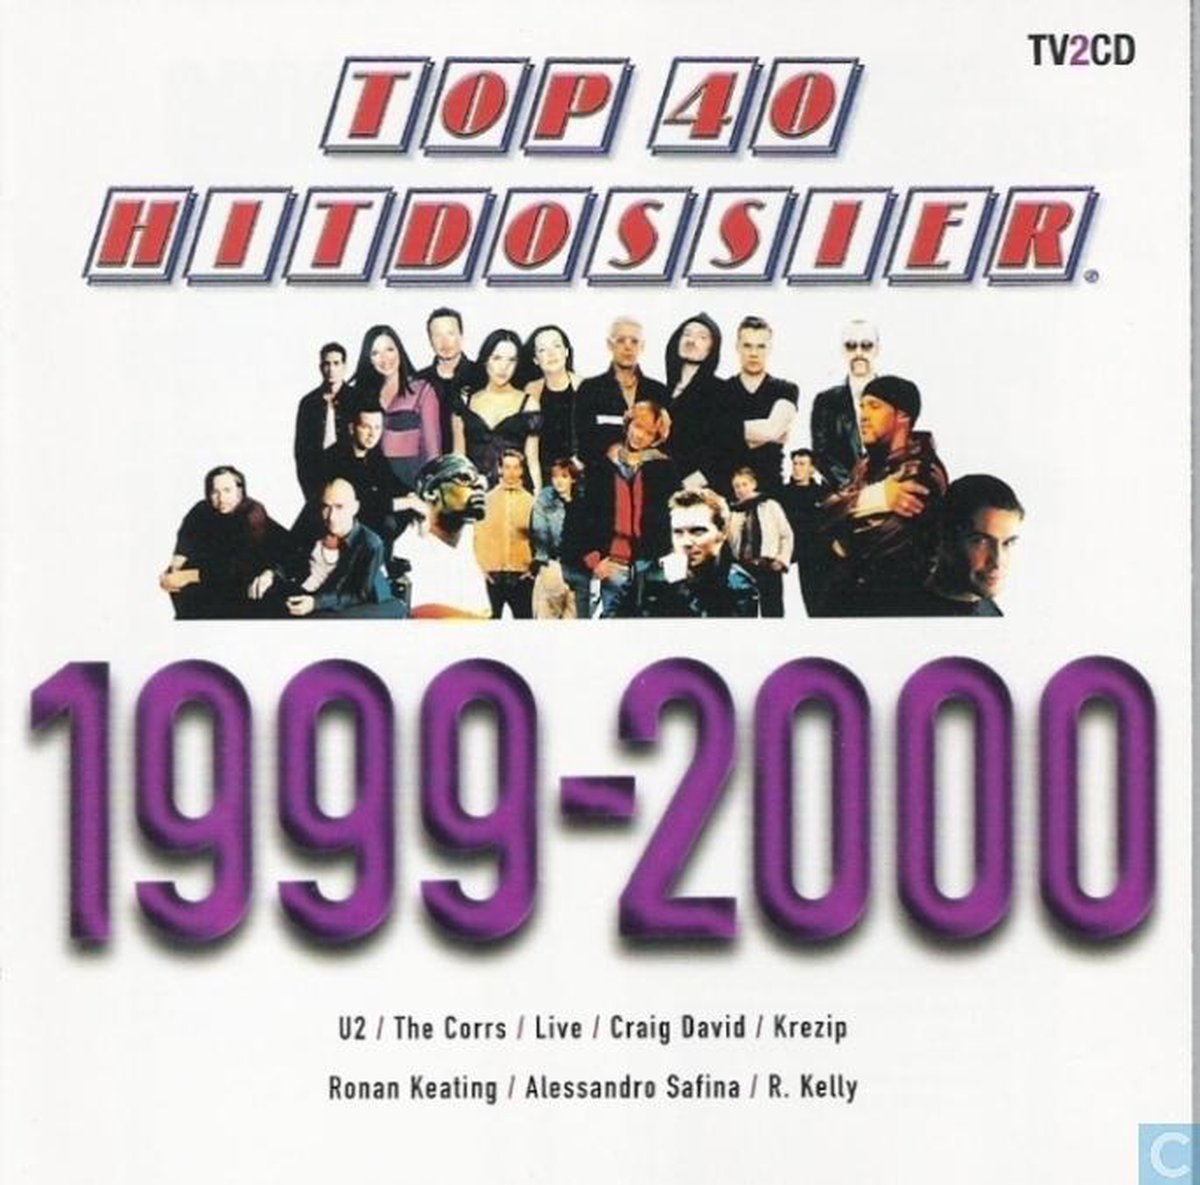 Top 40 Hitdossier 99-2000 - Top 40